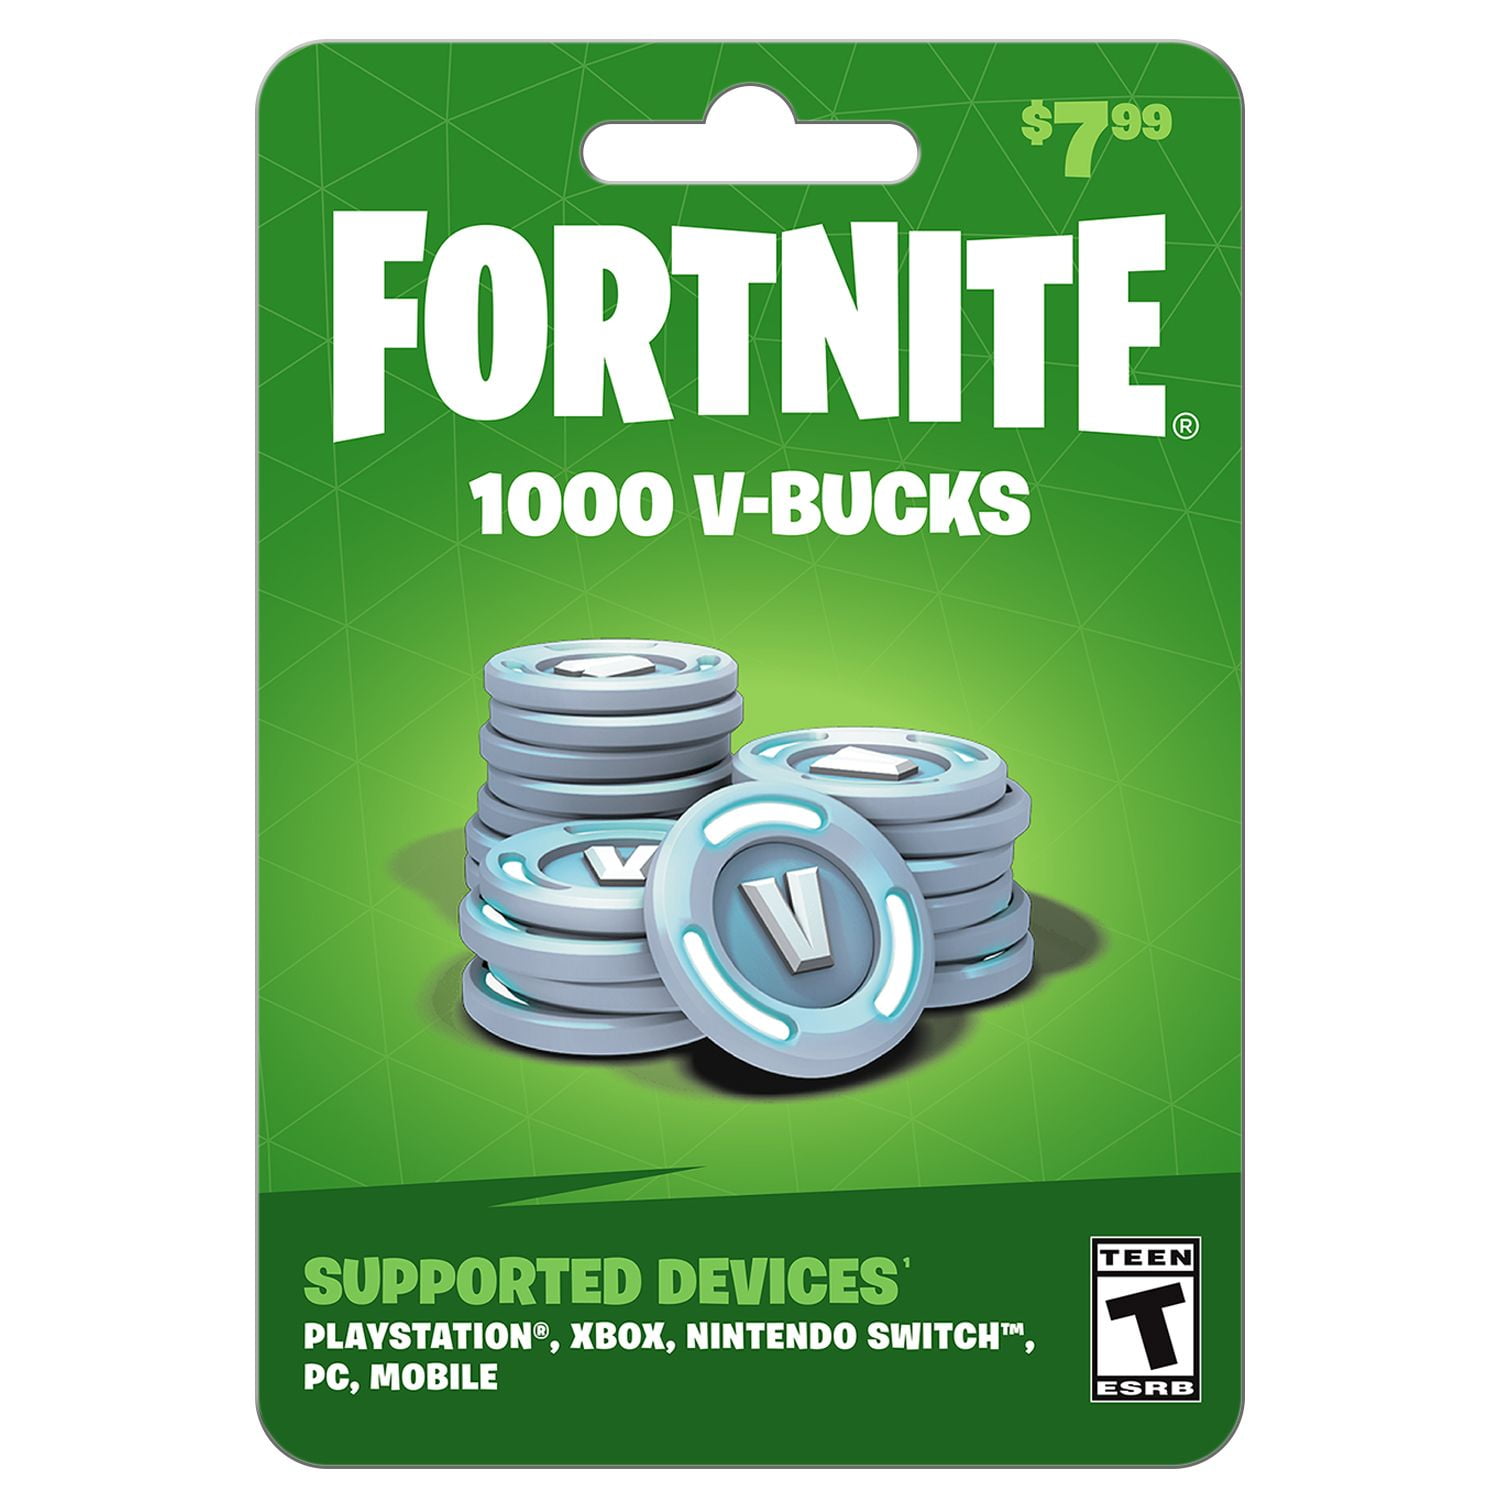 Fortnite - 1000 V-bucks